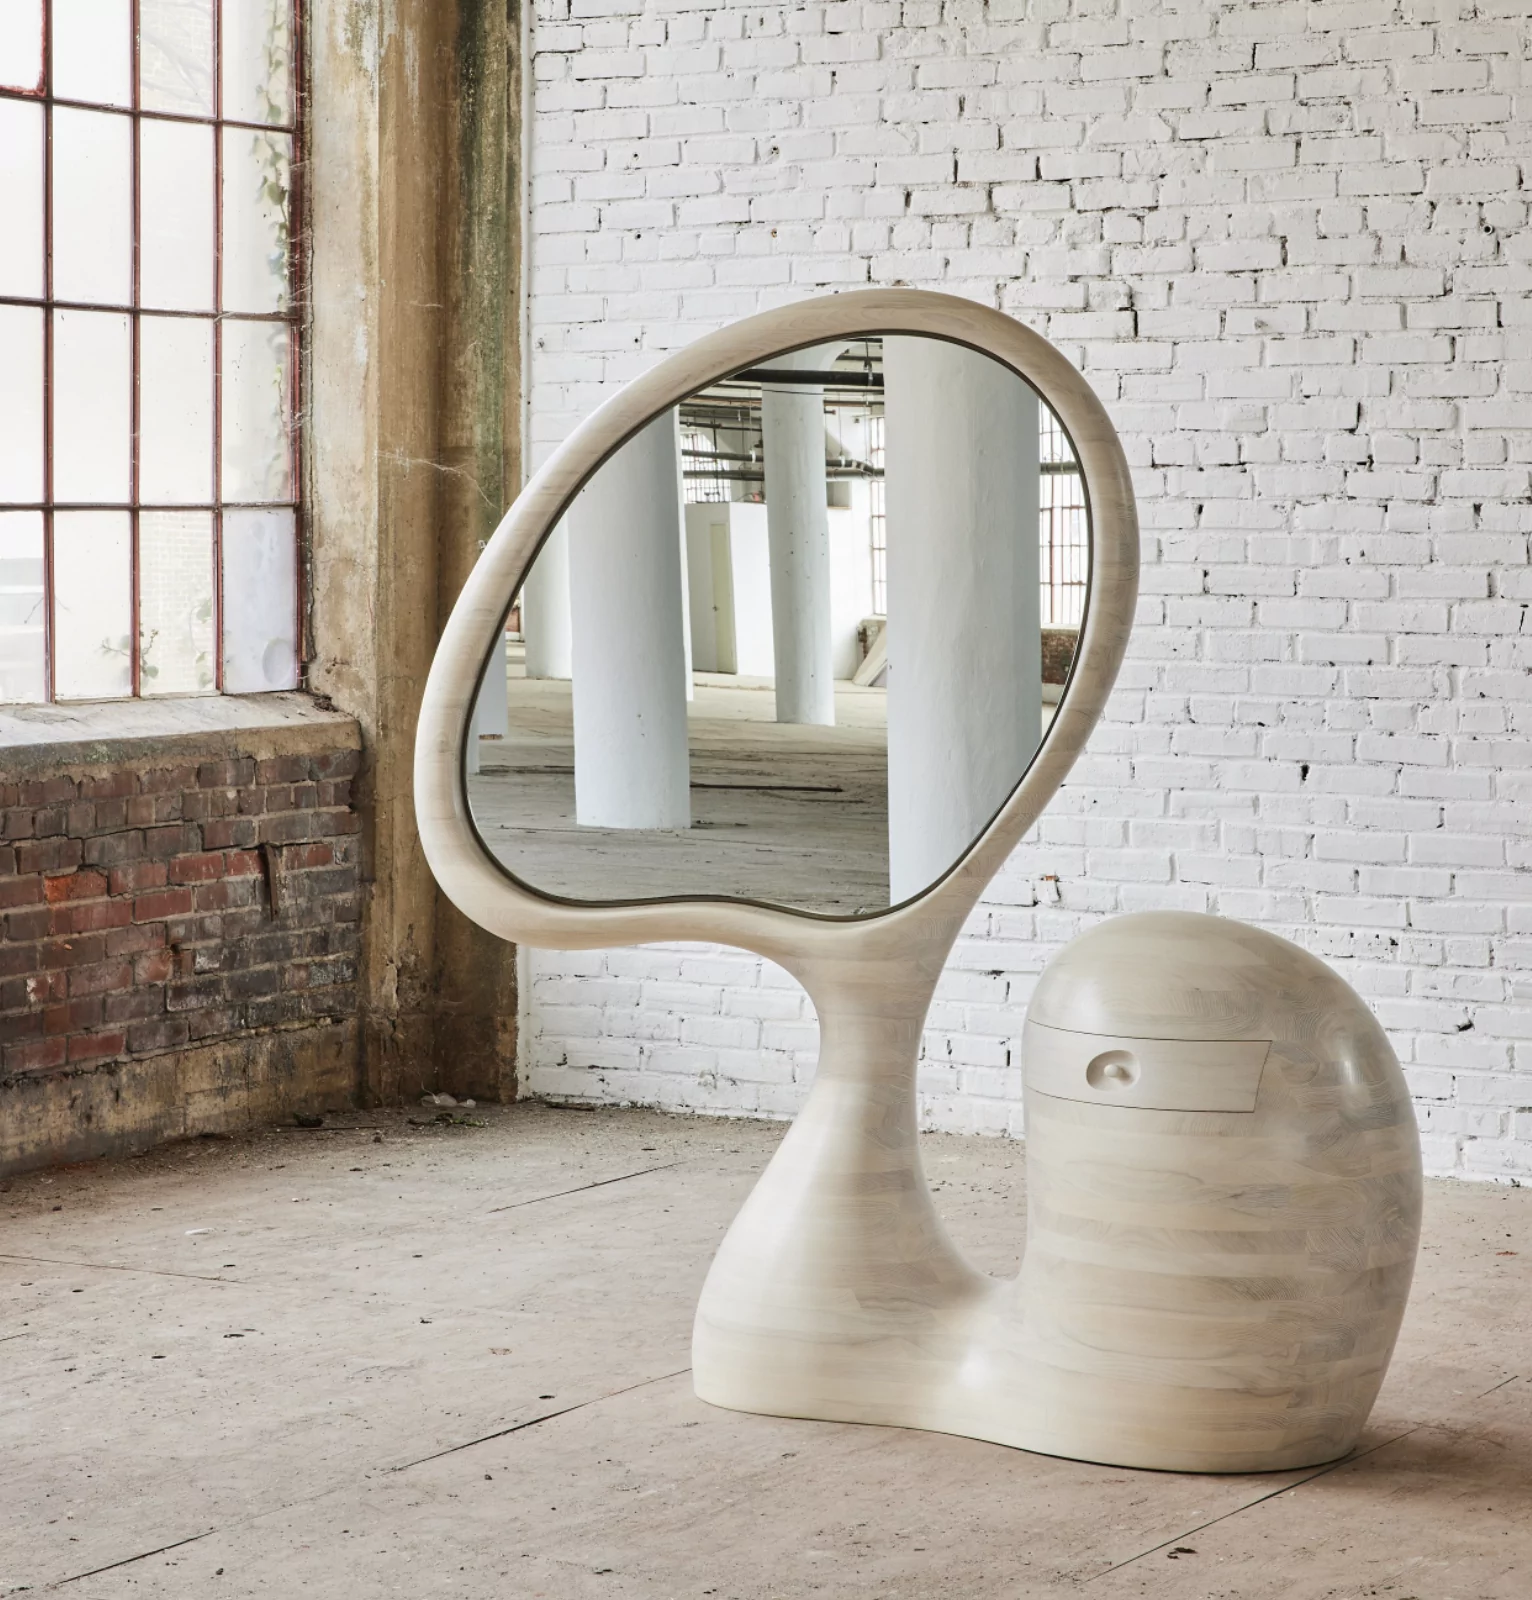 Sculptural Furniture by Aaron Poritz 4